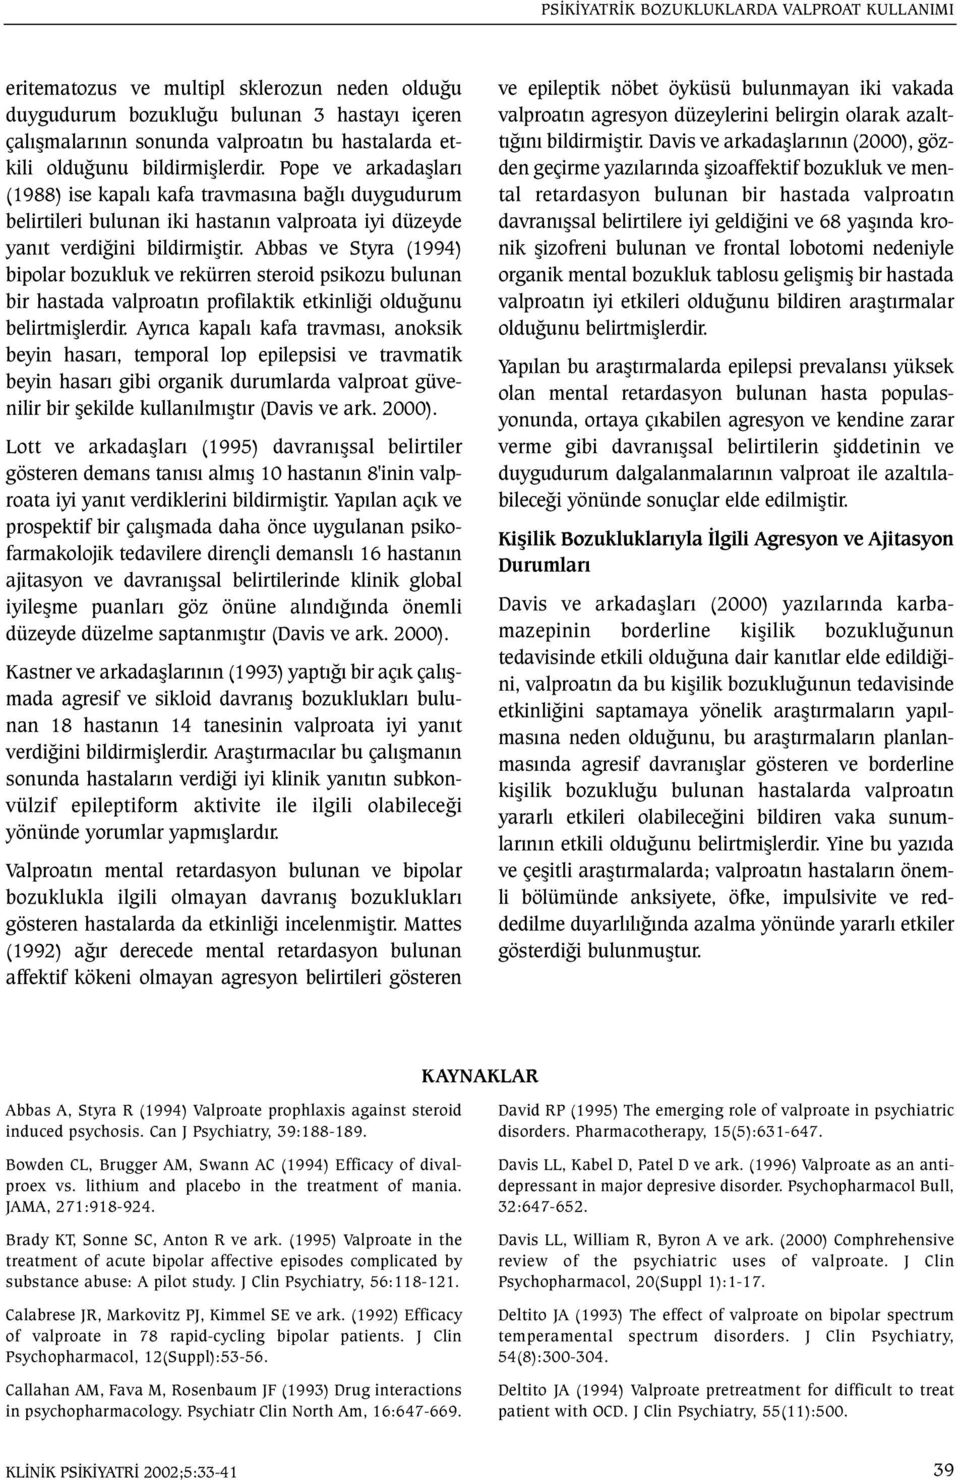 Abbas ve Styra (1994) bipolar bozukluk ve rekürren steroid psikozu bulunan bir hastada valproatýn profilaktik etkinliði olduðunu belirtmiþlerdir.